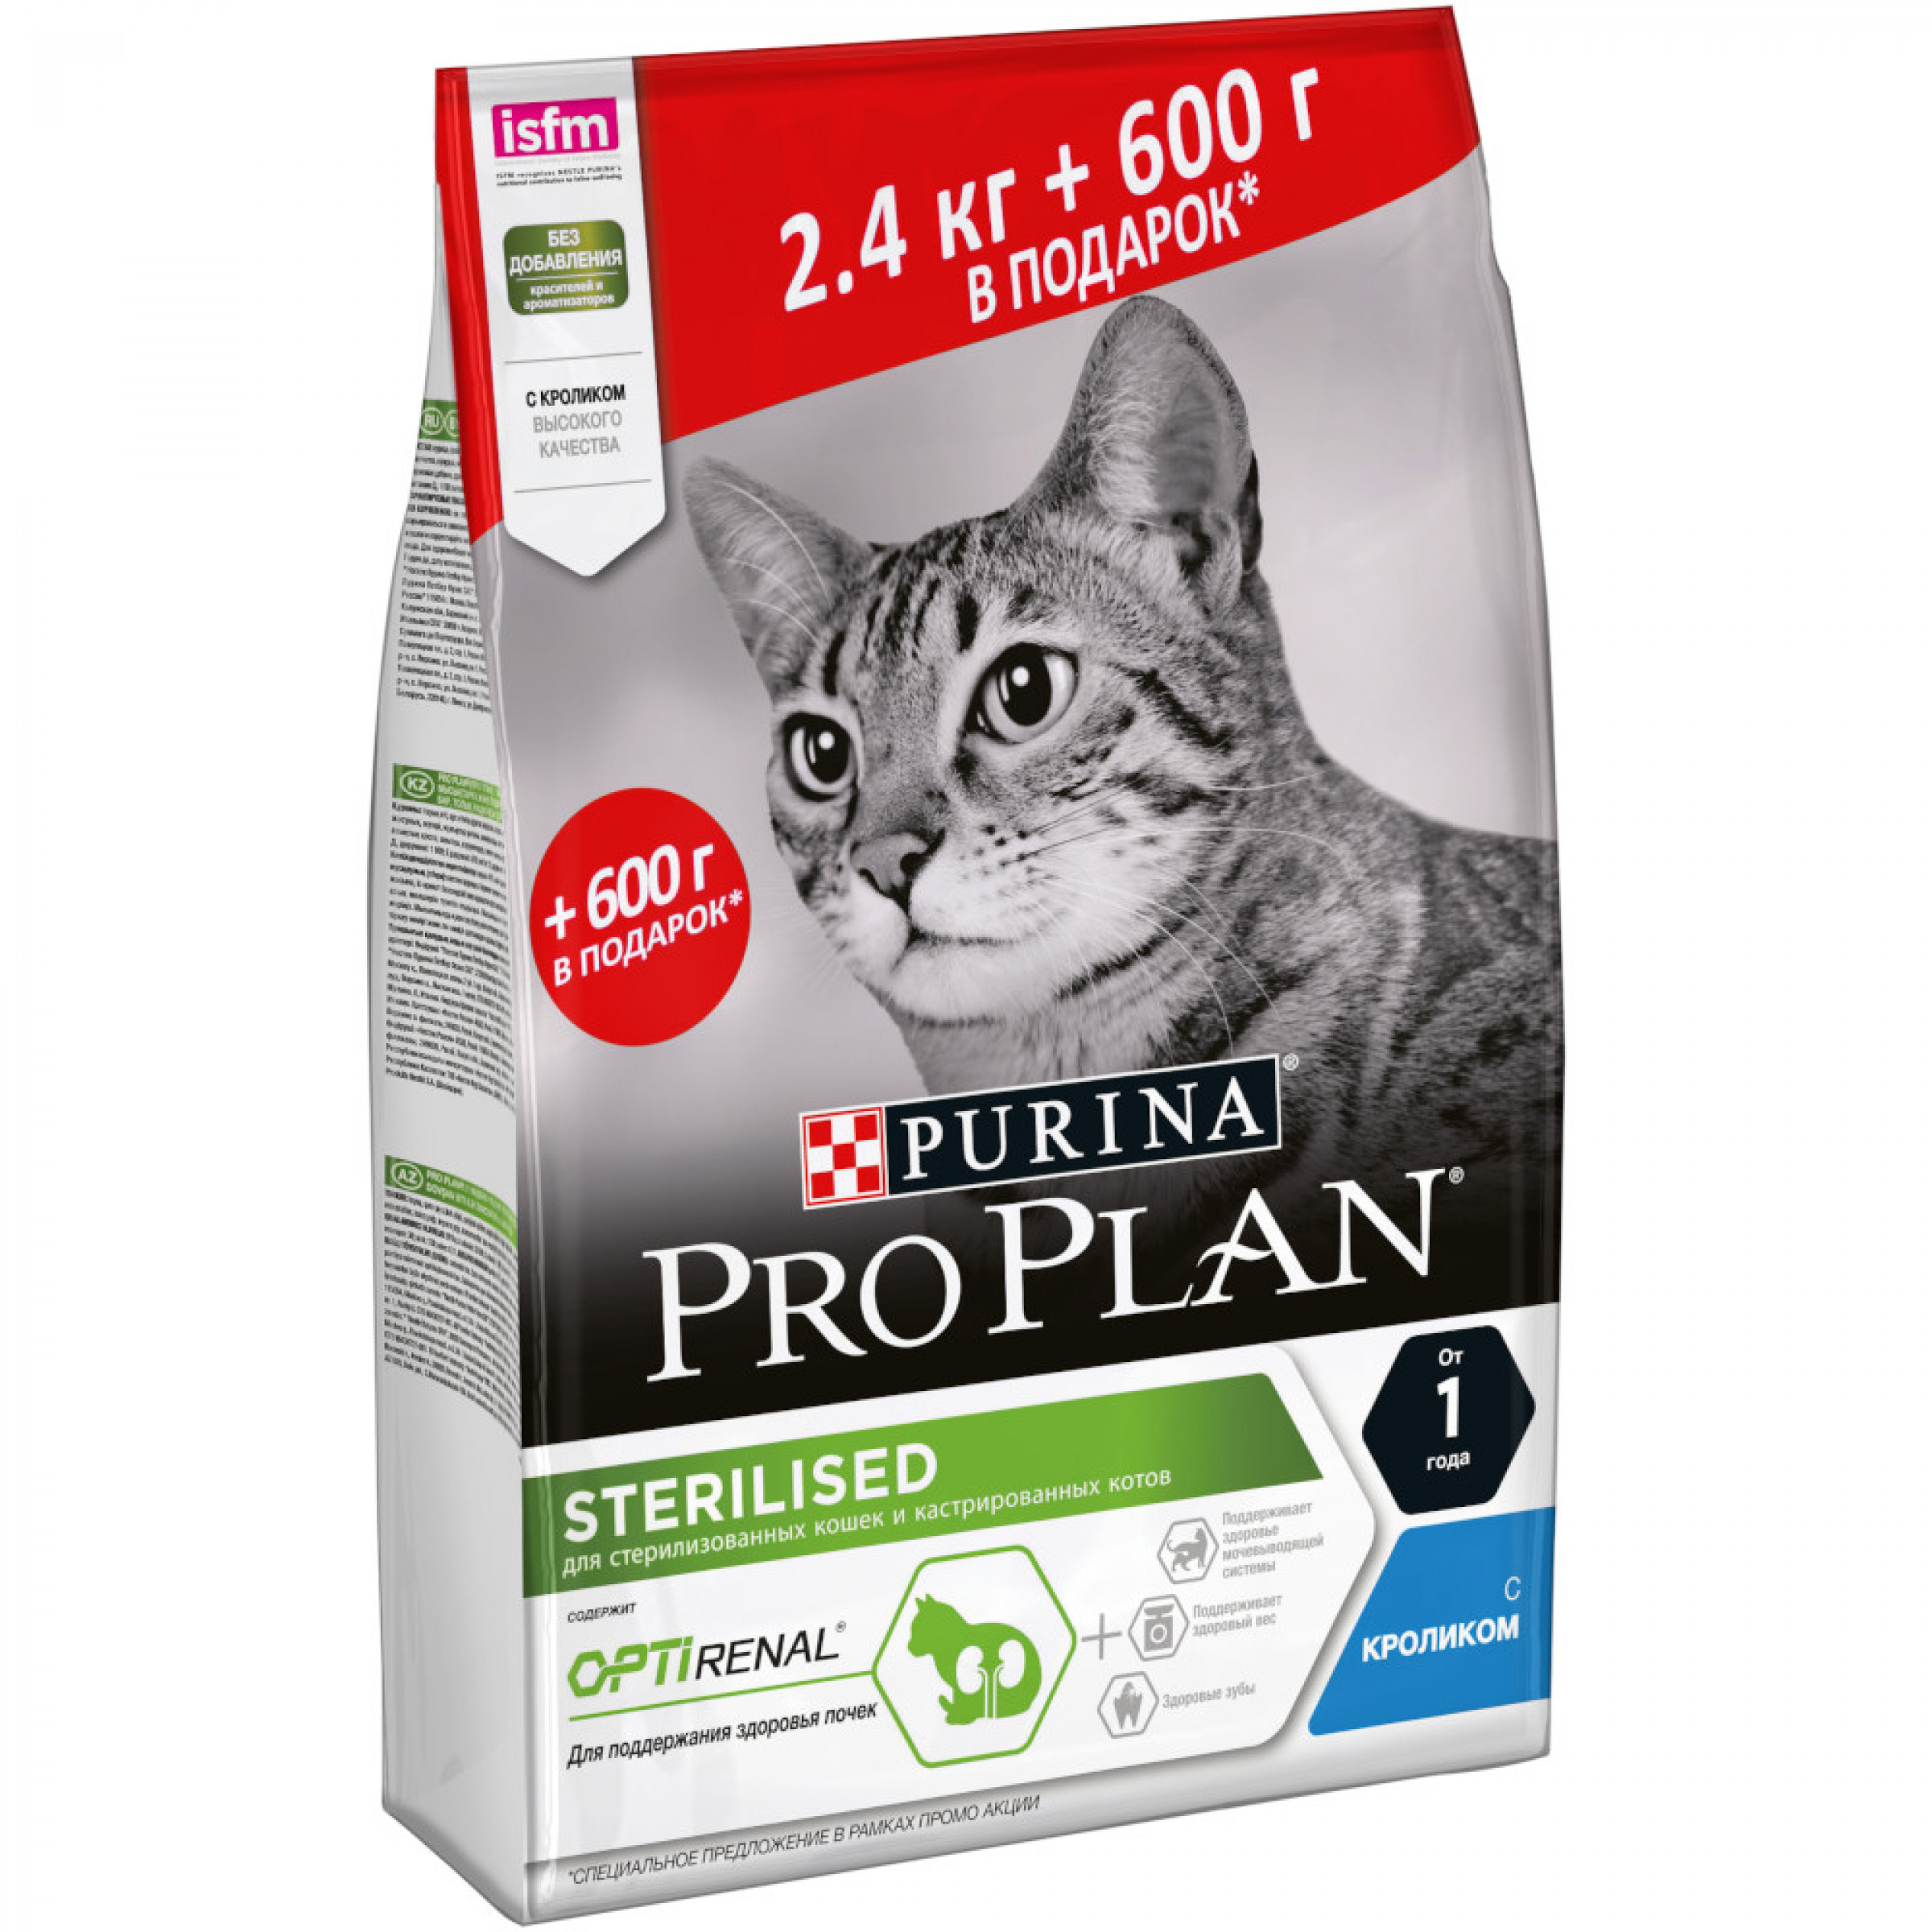 Сухой корм для кастрированных кошек с кроликомPurina Pro Plan, 2,4 кг+600 гр в подарок